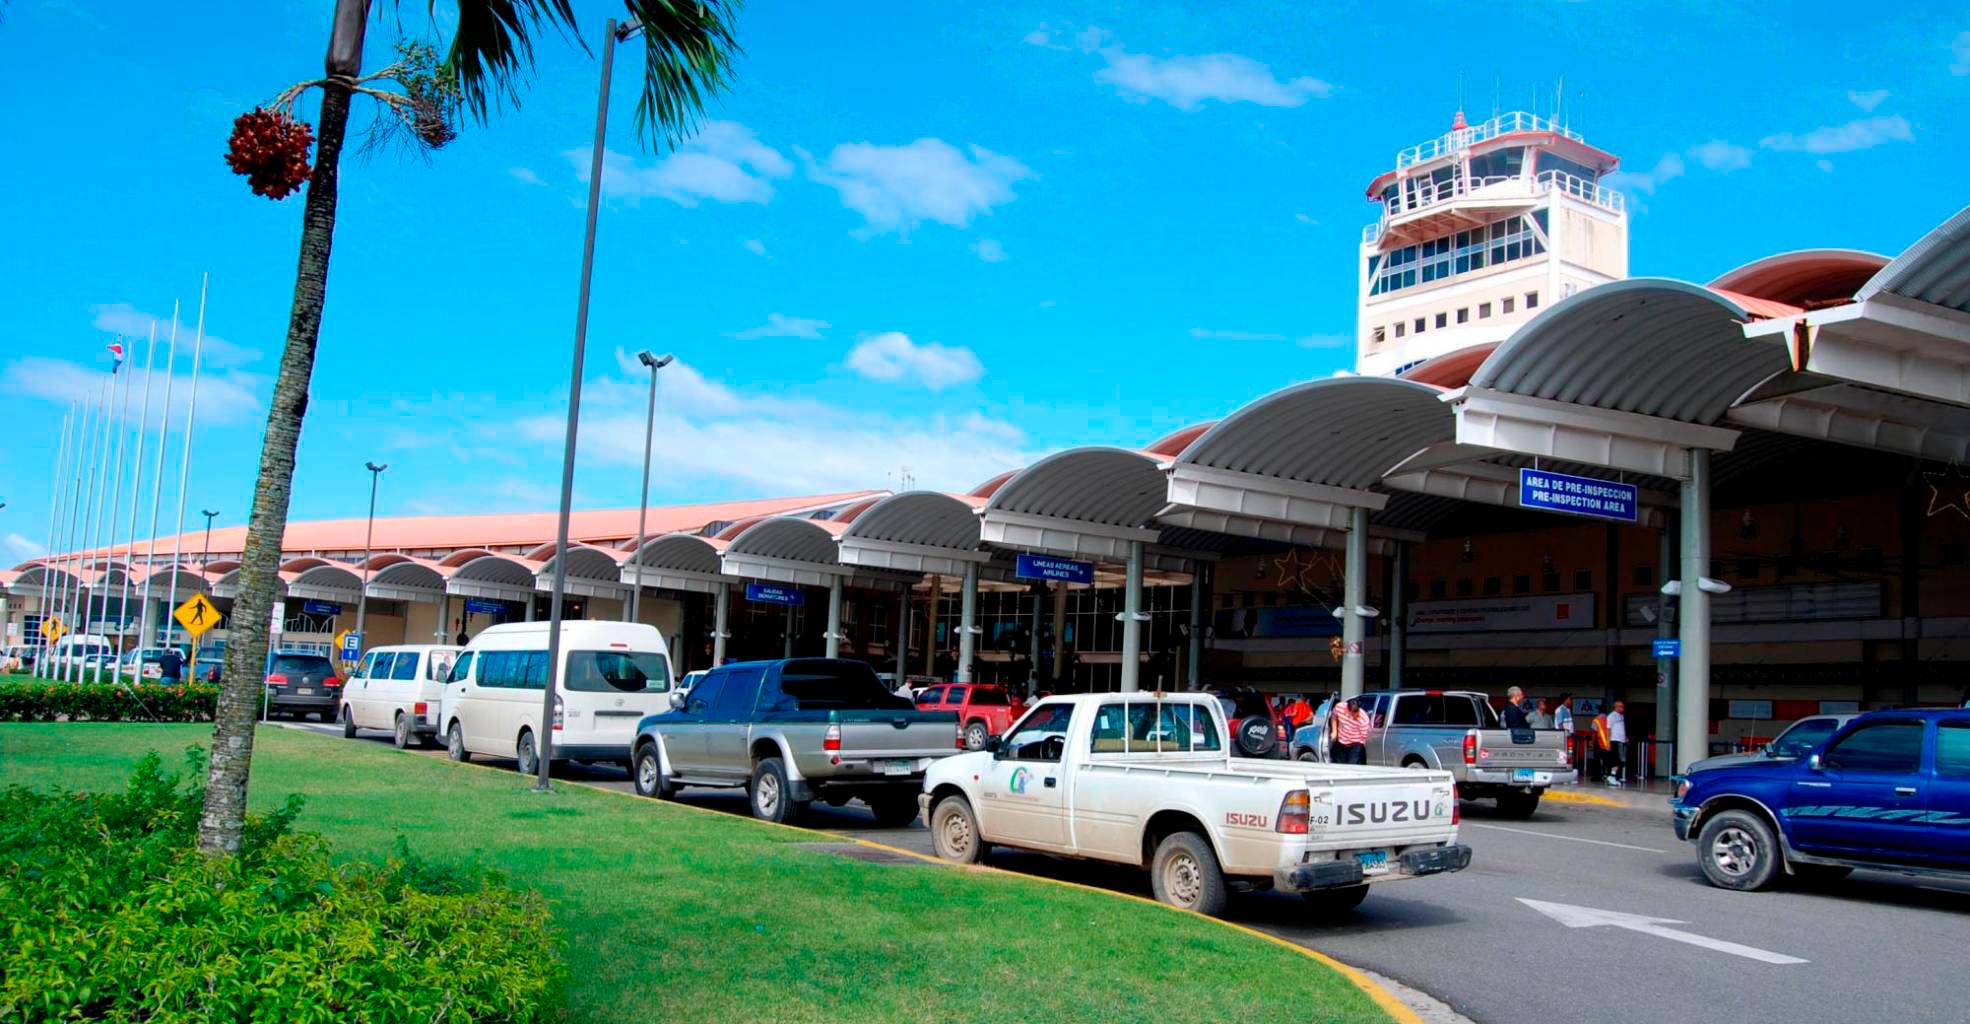 Falsa alarma de bomba afecta operaciones del aeropuerto del Cibao